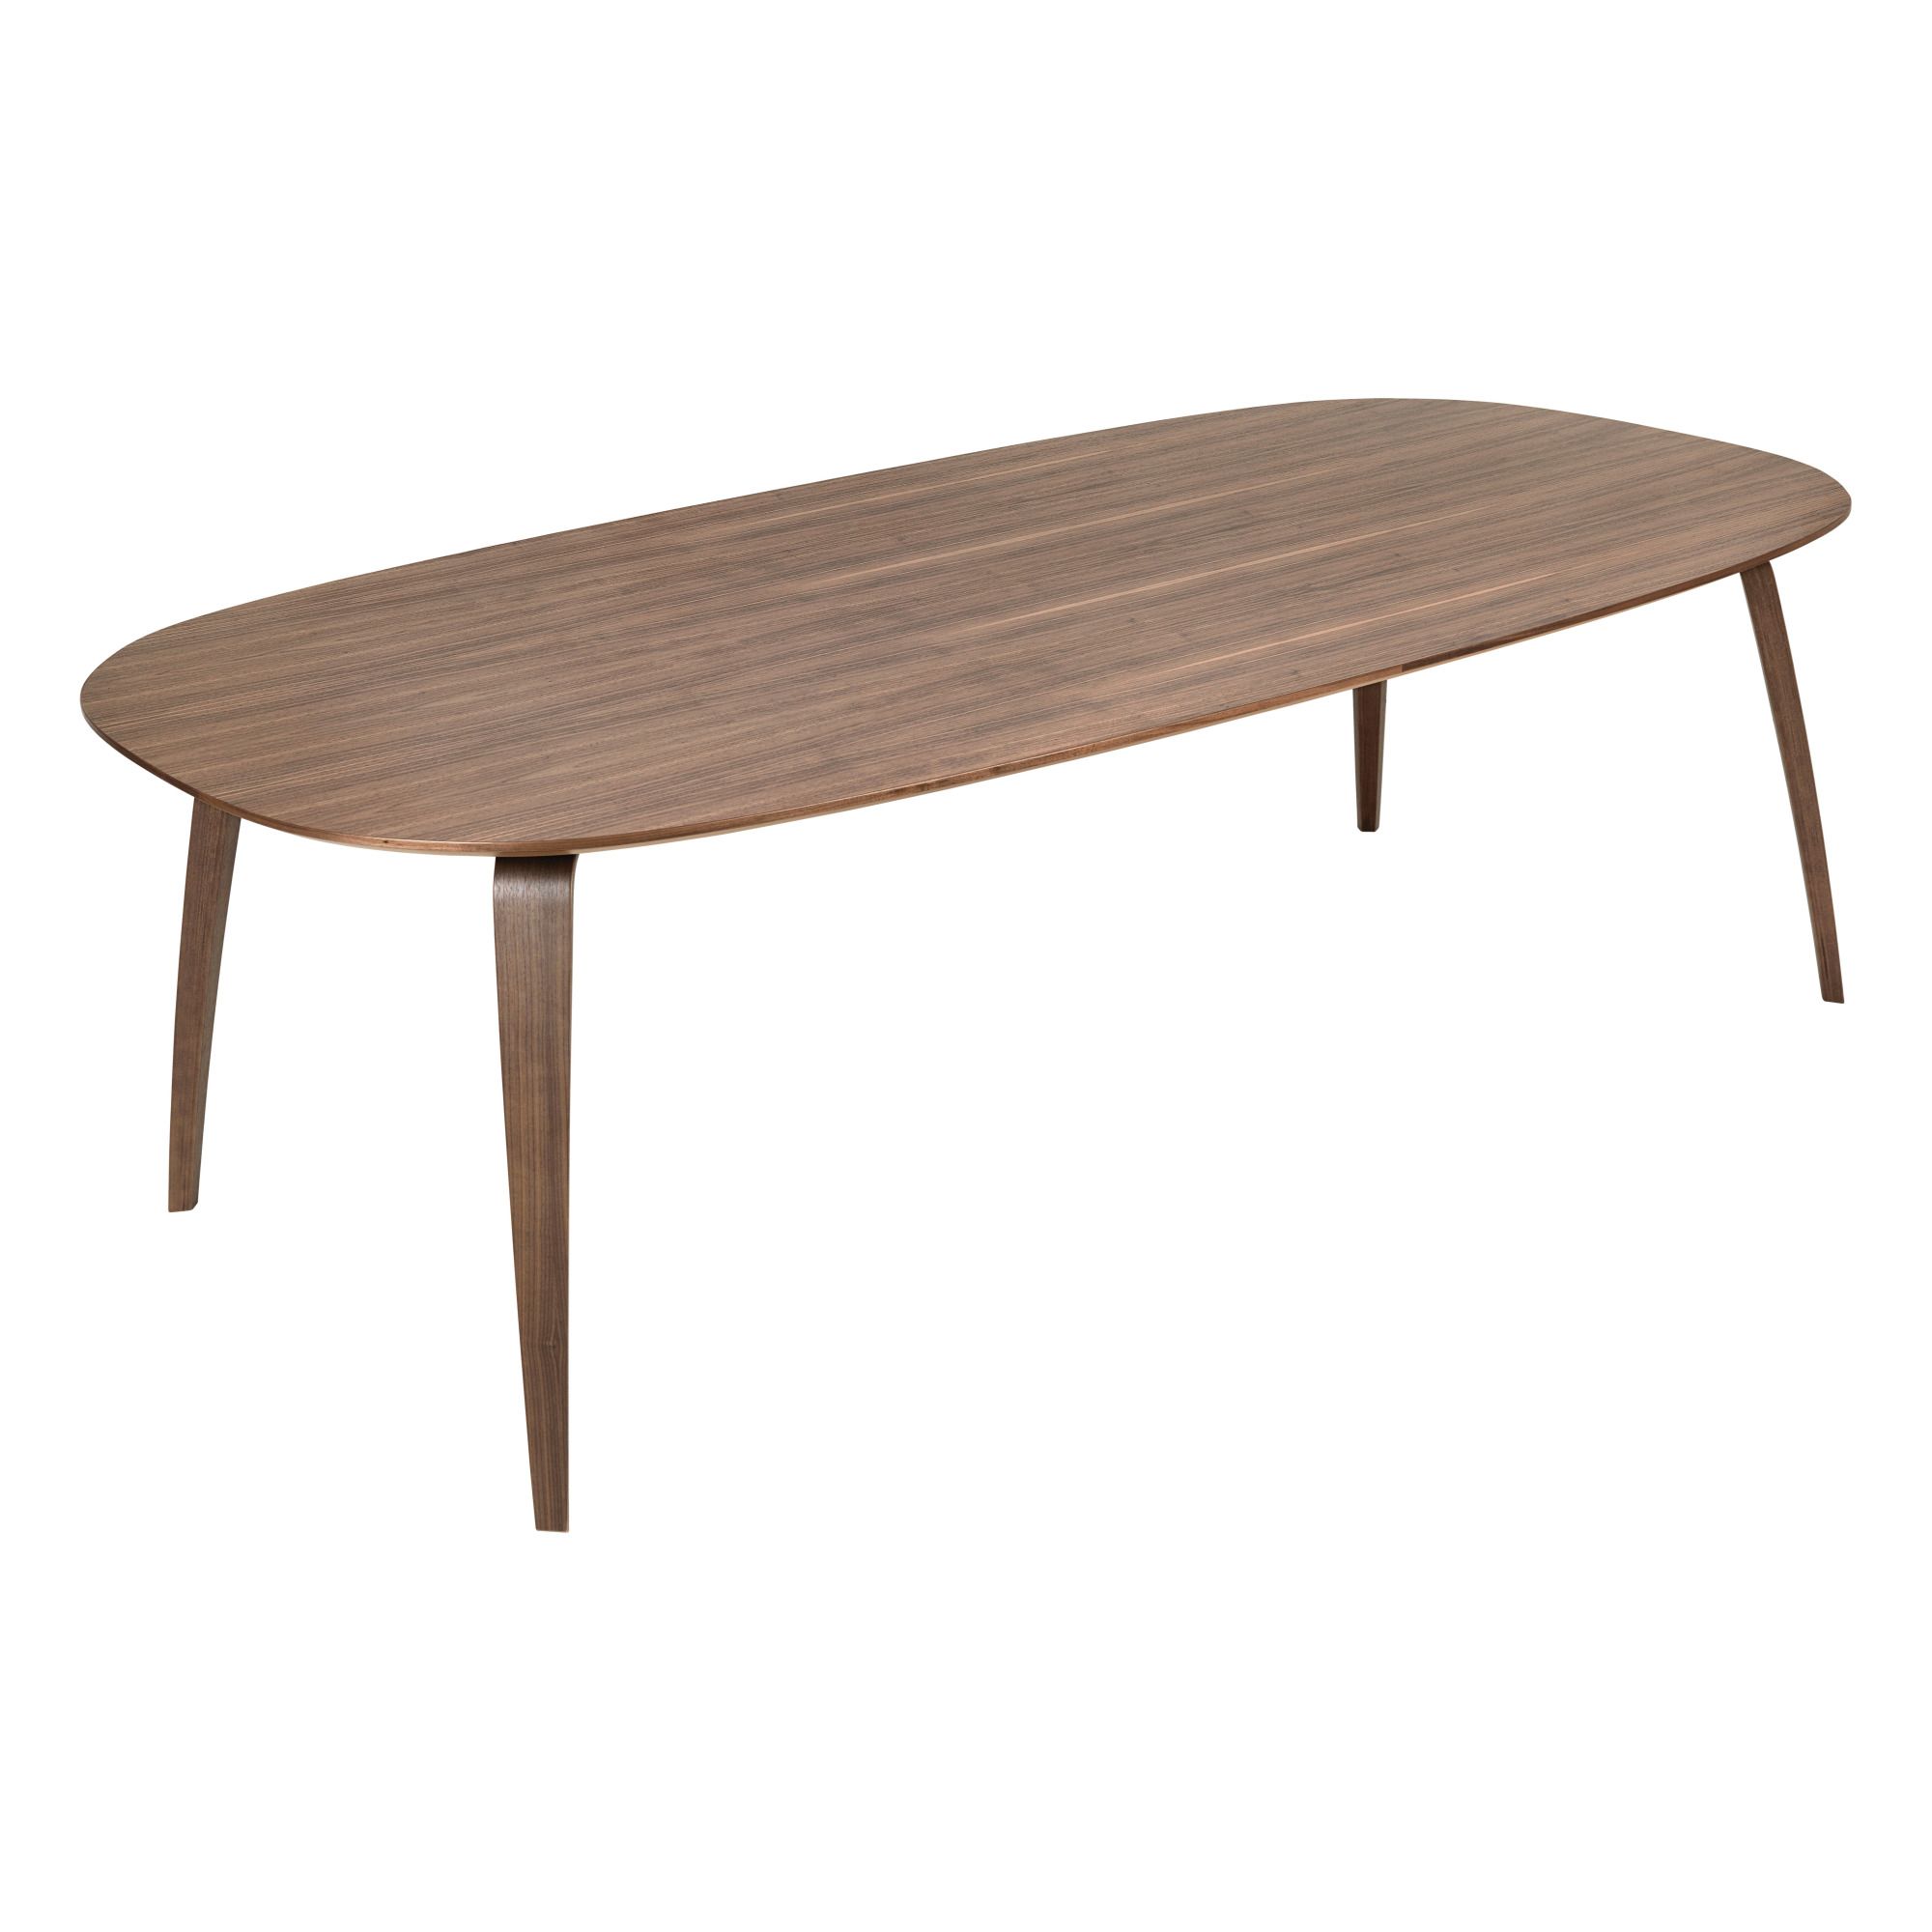 Gubi - Table elliptique 230x120 cm, Komplot Design, 2013 - Noyer